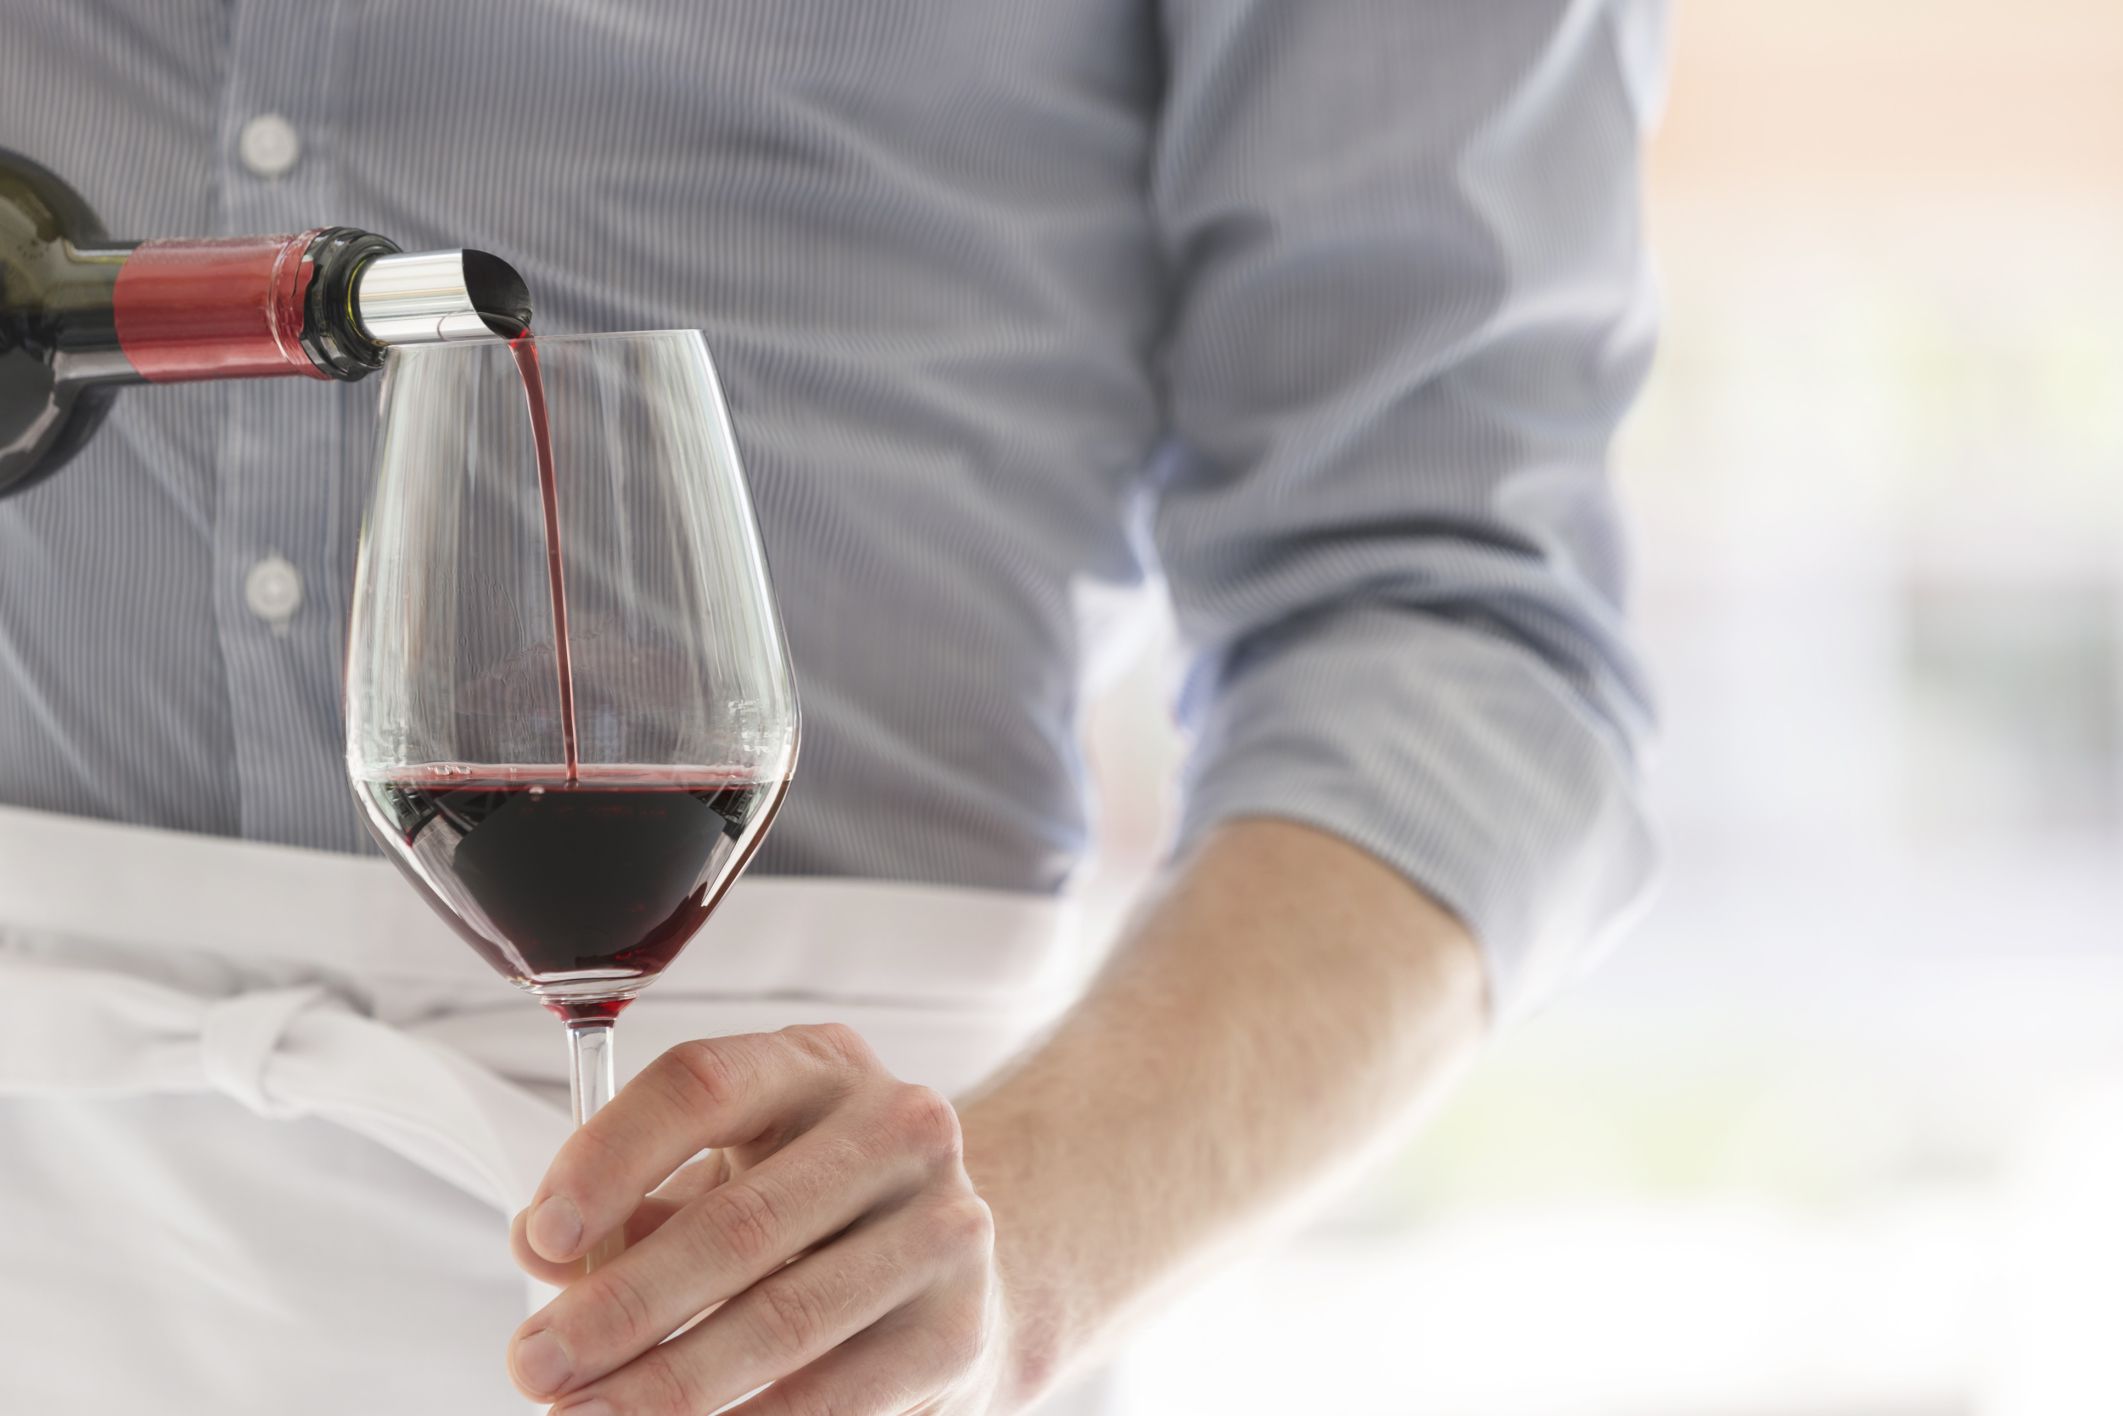 Ce beneficii poate avea vinul asupra organismului uman dacă este consumat în cantități moderate